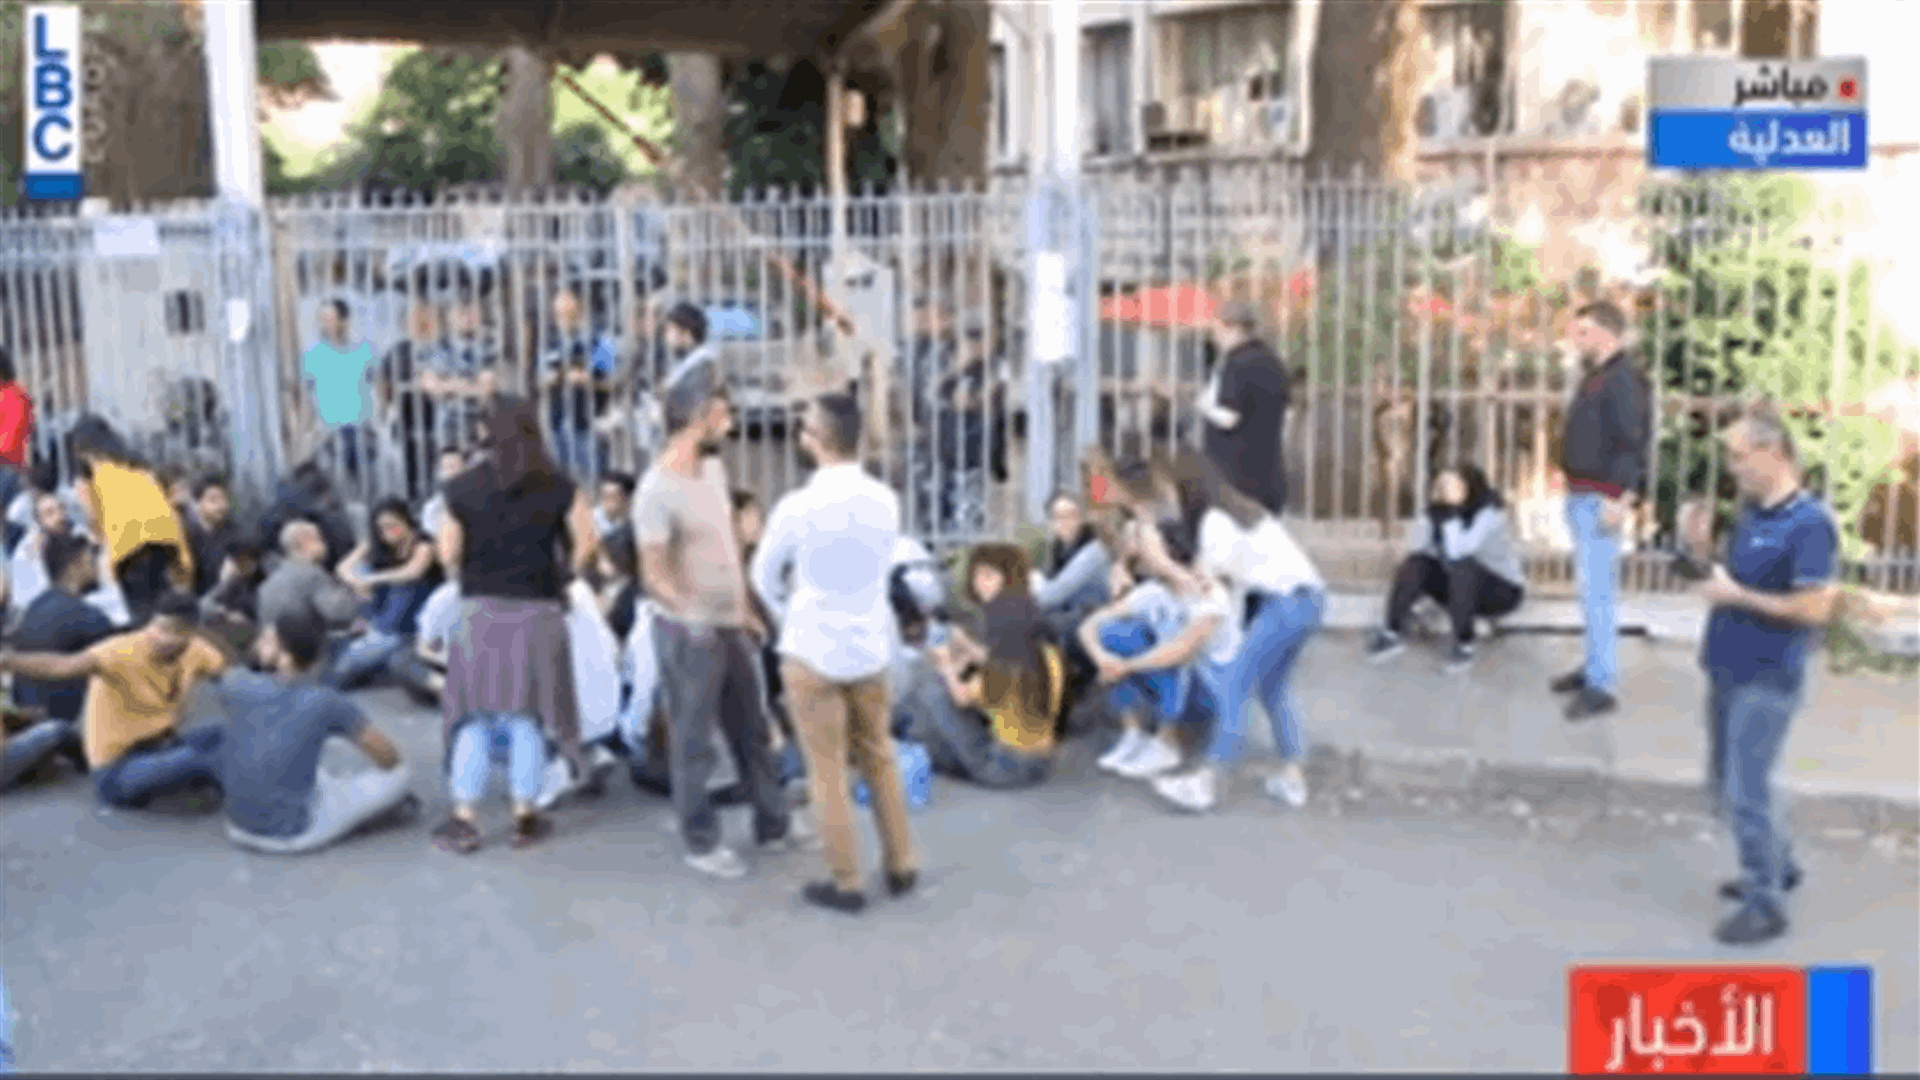 المتظاهرون يرفضون فتح مدخل قصر العدل (فيديو)